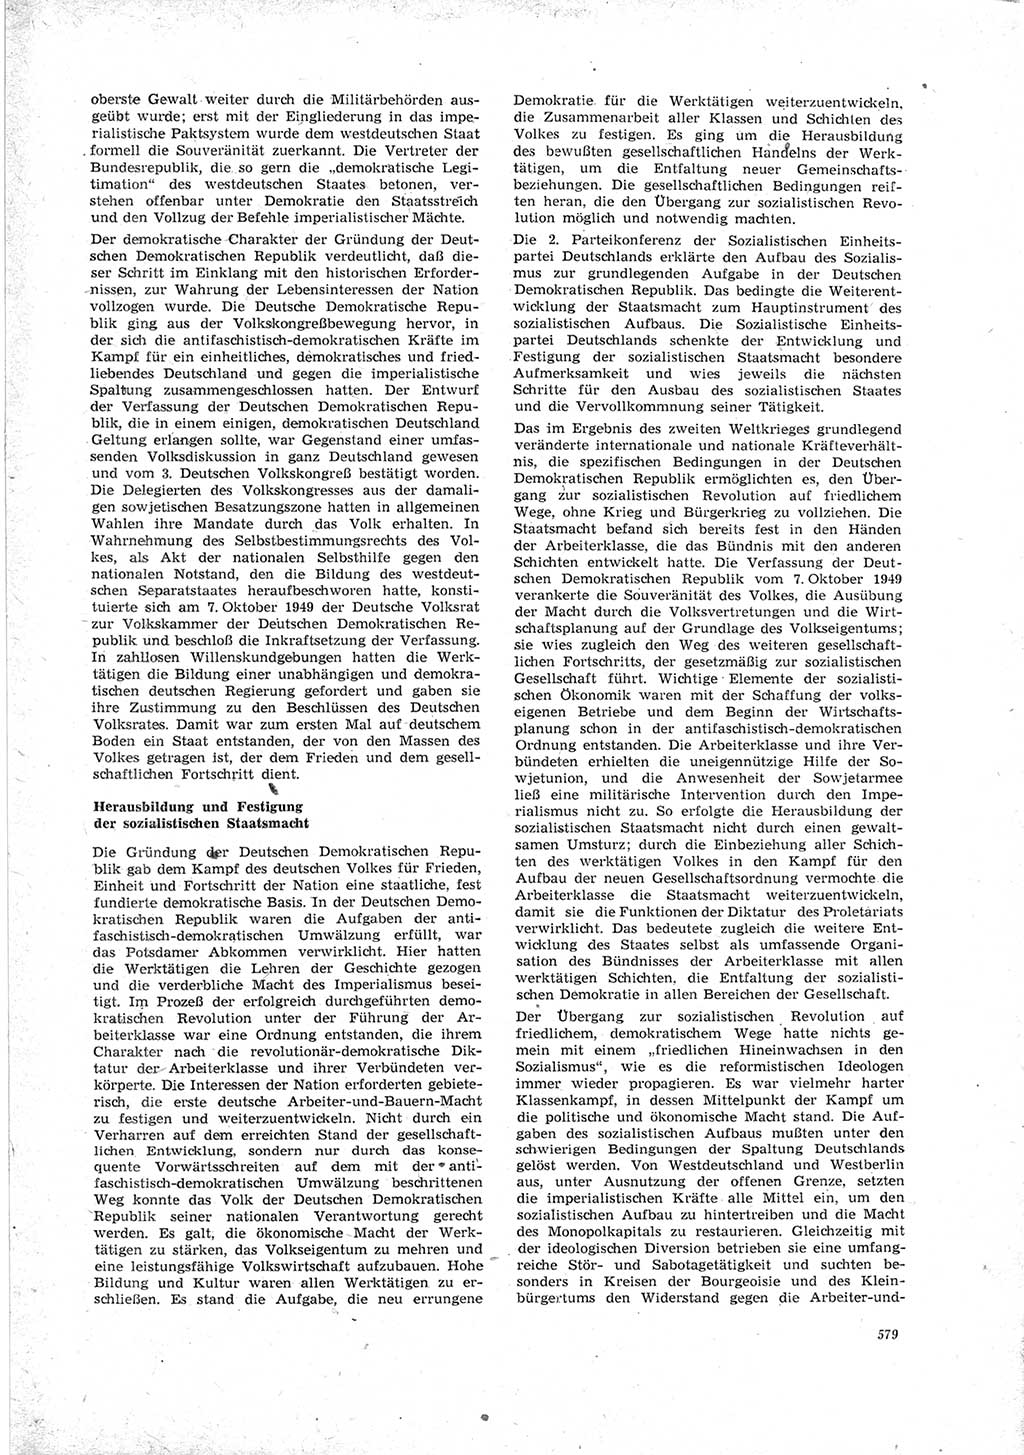 Neue Justiz (NJ), Zeitschrift für Recht und Rechtswissenschaft [Deutsche Demokratische Republik (DDR)], 23. Jahrgang 1969, Seite 579 (NJ DDR 1969, S. 579)